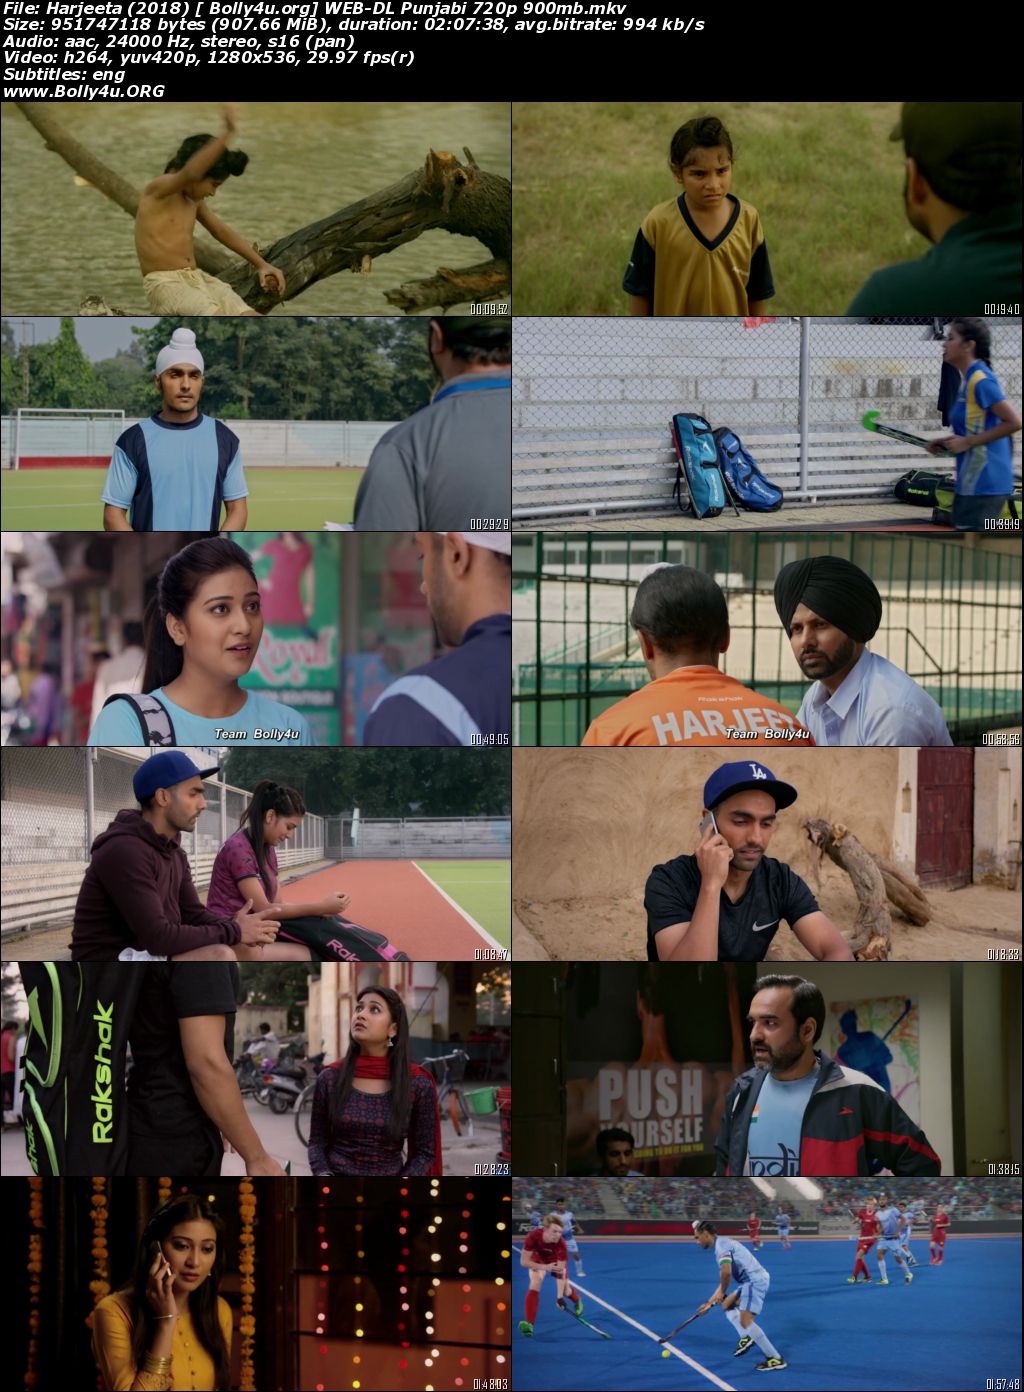 Harjeeta 2018 WEB-DL 350Mb Punjabi Movie Download 480p